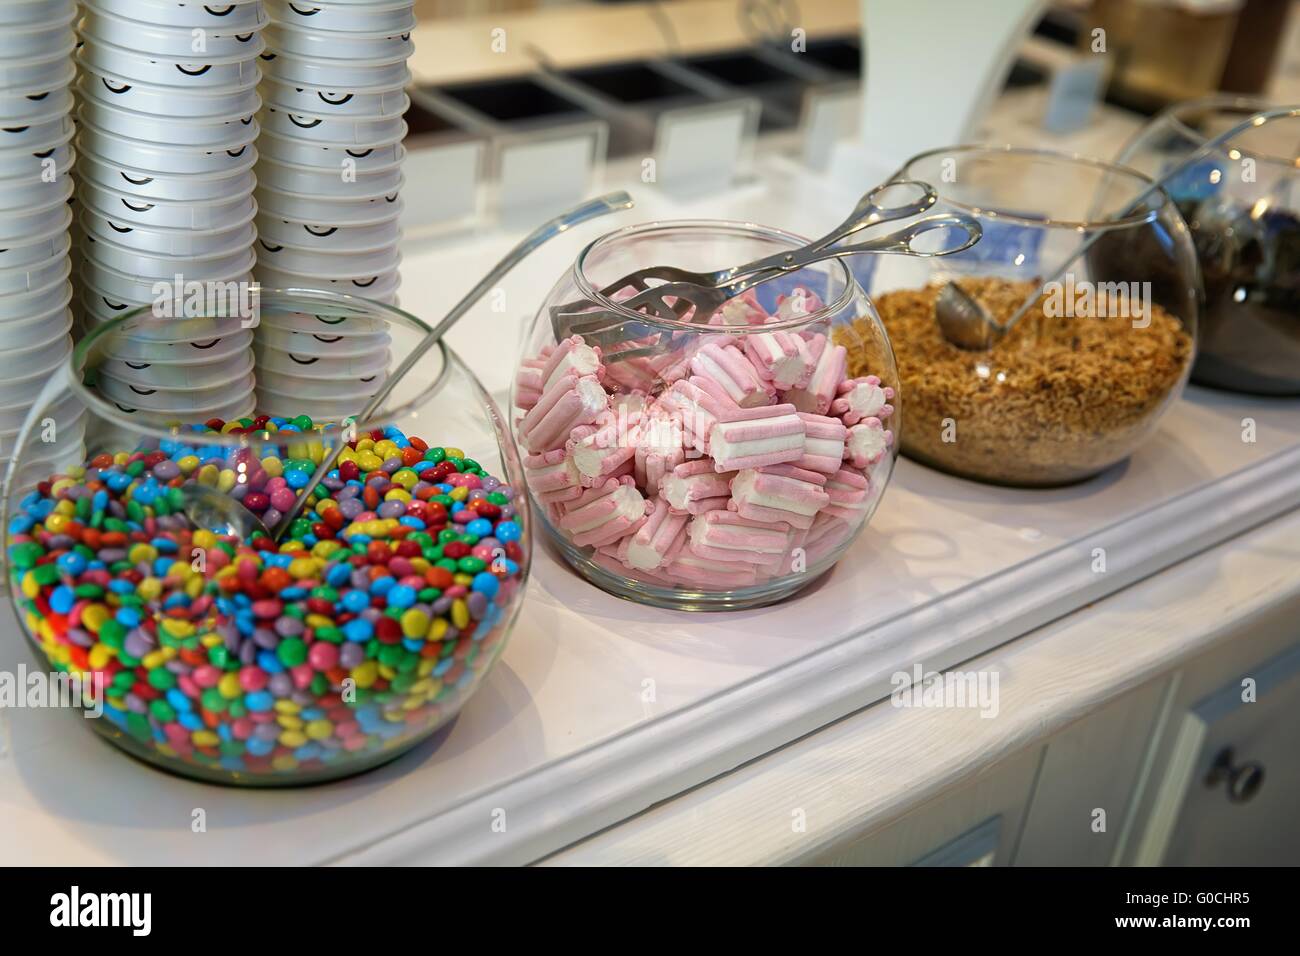 Tazones dulces y golosinas para decorar diferentes platos Fotografía de - Alamy